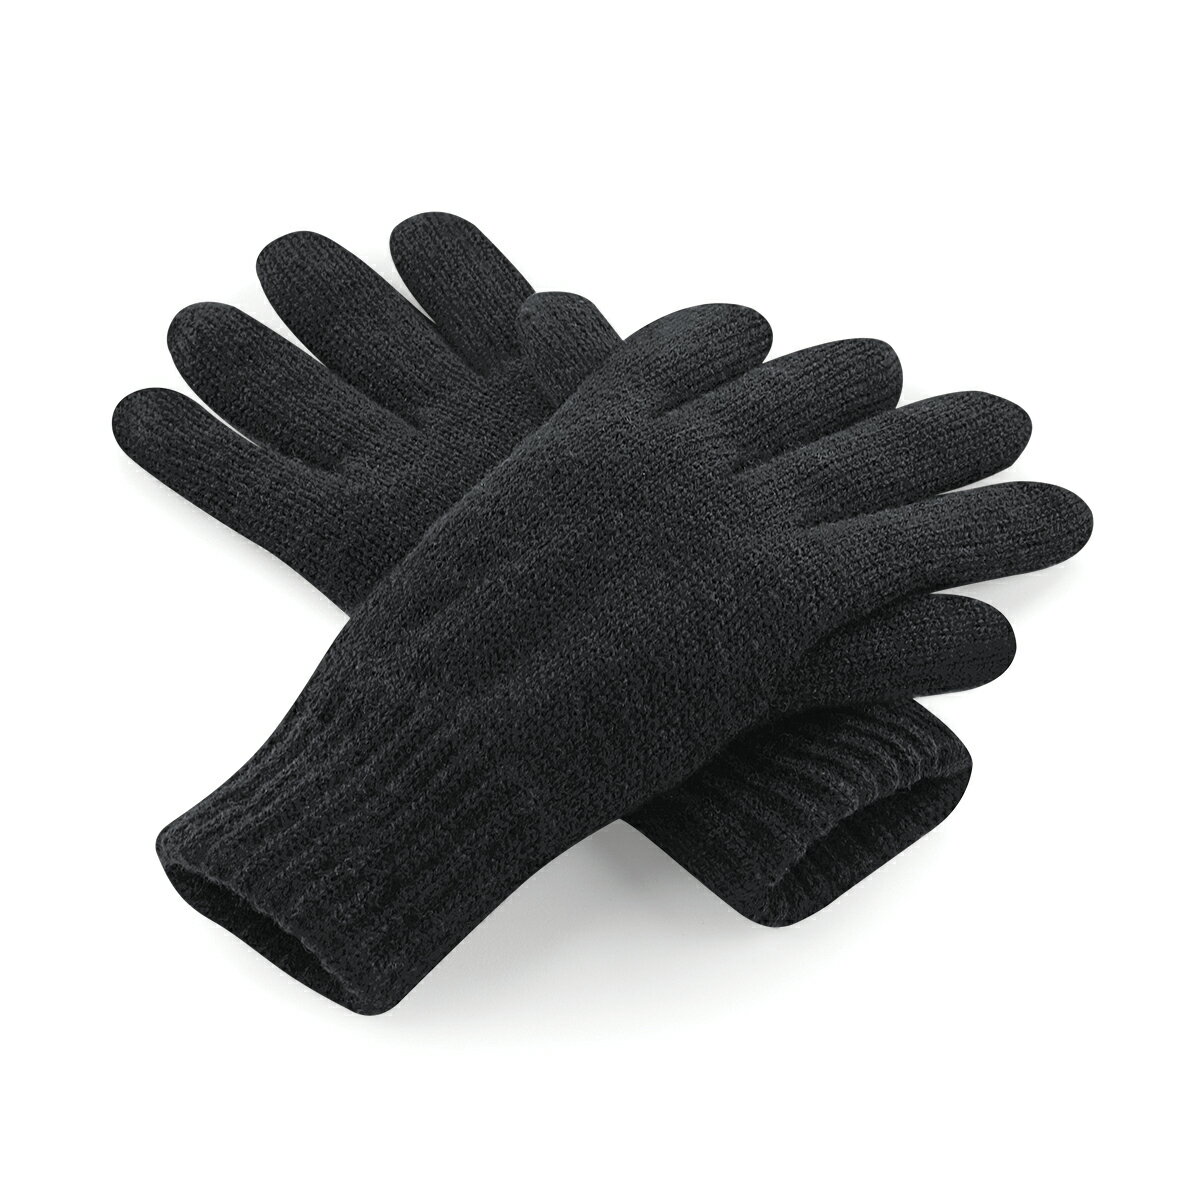 (ビーチフィールド) Beechfield ユニセックス シンサレート サーマル ニット手袋 ニットグローブ 冬 防寒 